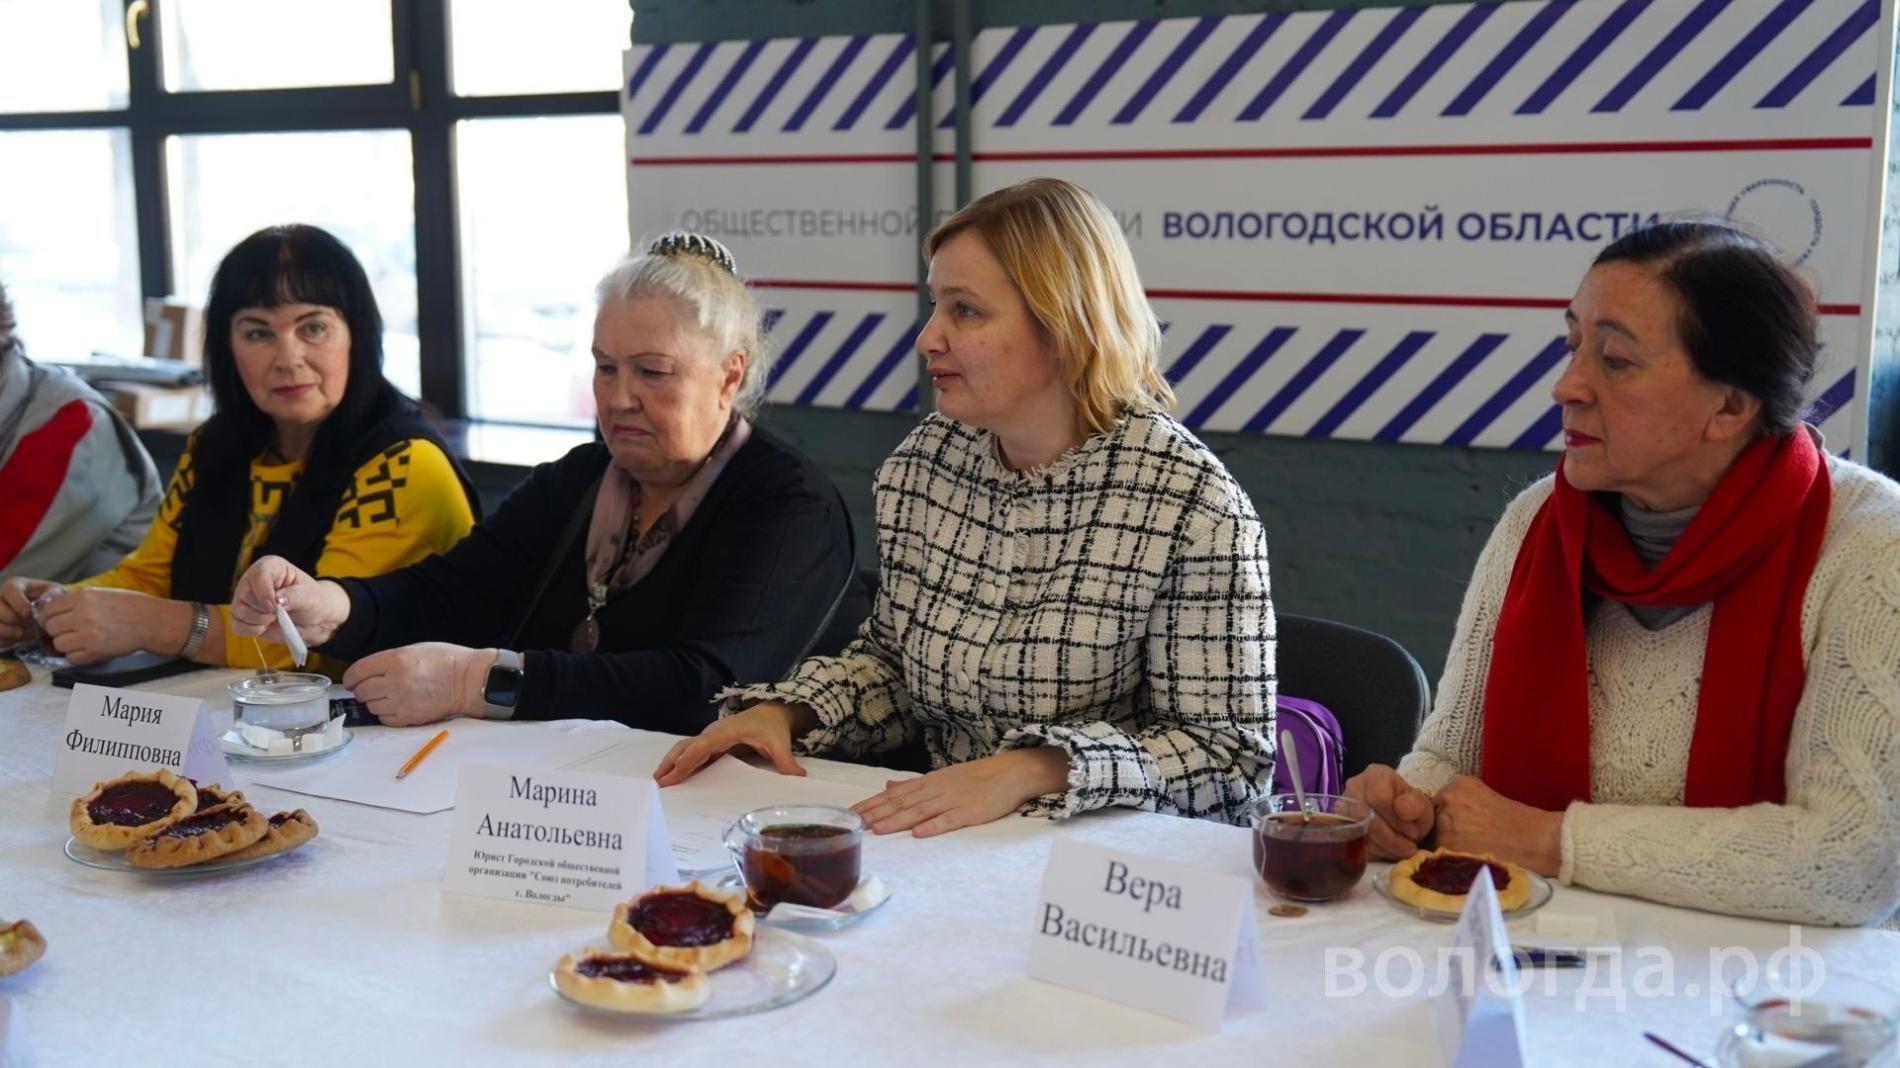 Молодёжную политику города обсудят читатели газеты «Вологда.рф»